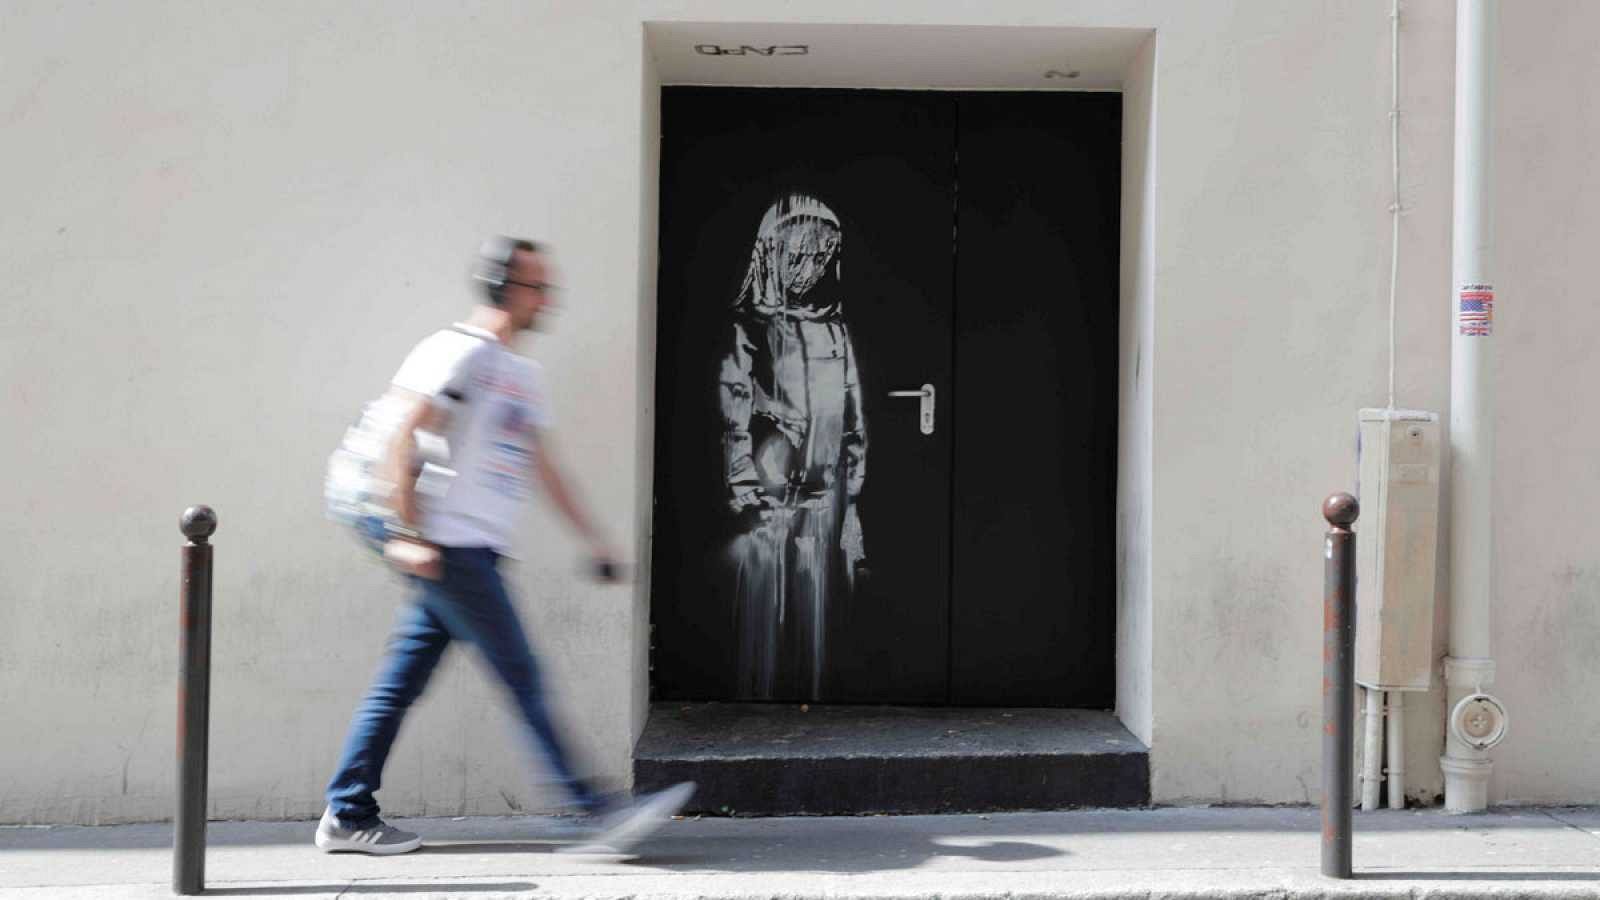 Imagen de la obra atribuida a Bansky en la puerta de la sala Bataclan